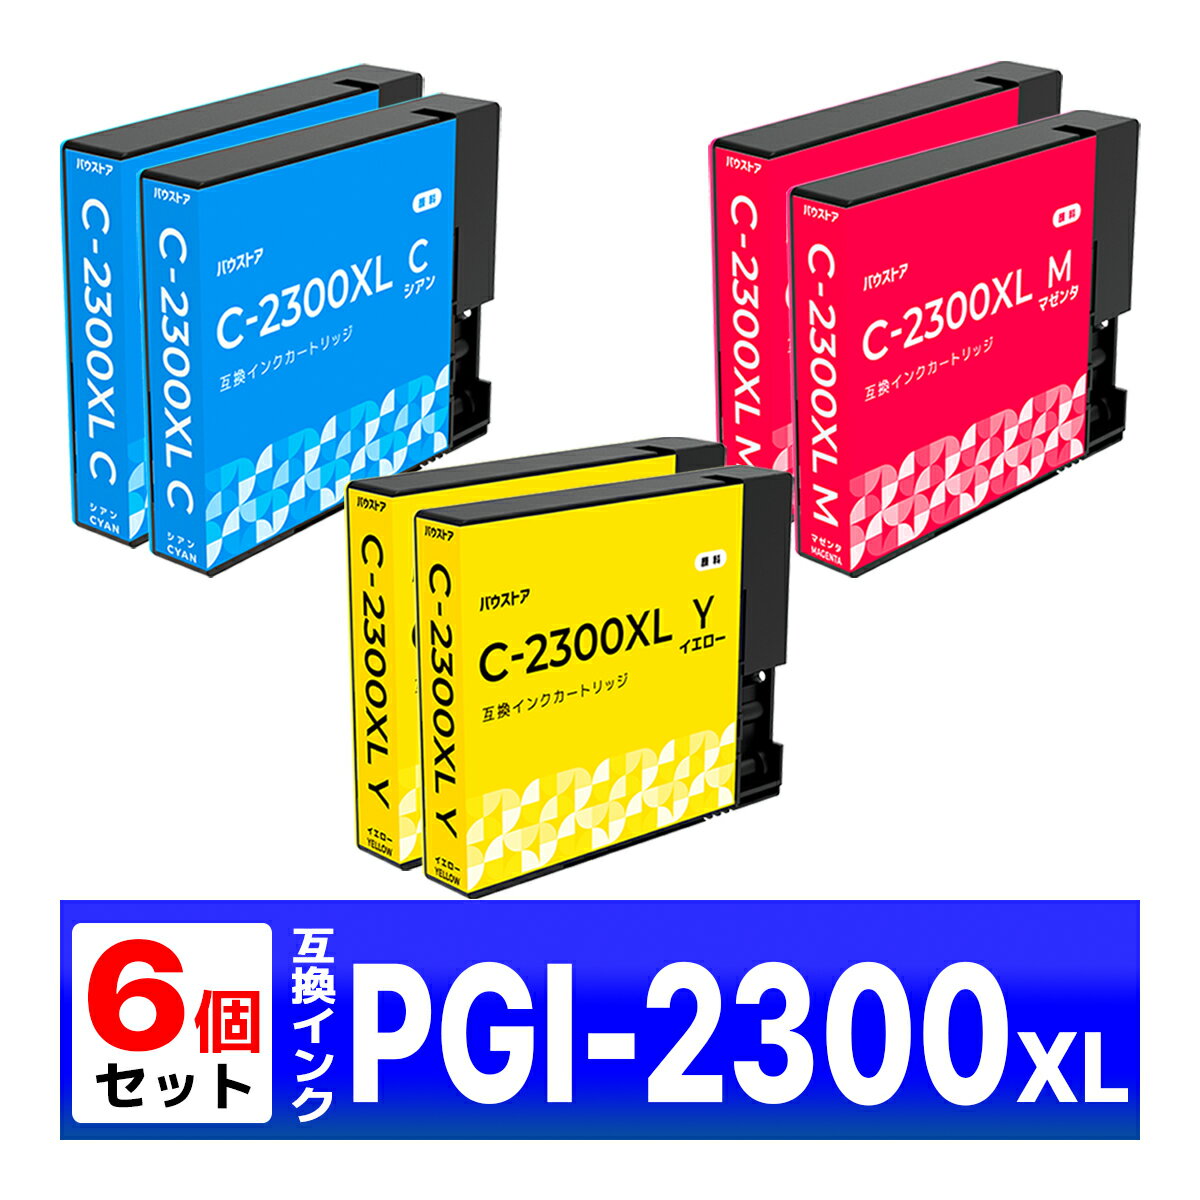 PGI-2300XL ݊ CN MB5430 MB5330 MB5130 MB5030 iB4130 iB4030 Canon Lm VAE}[^ECG[ 6Zbg